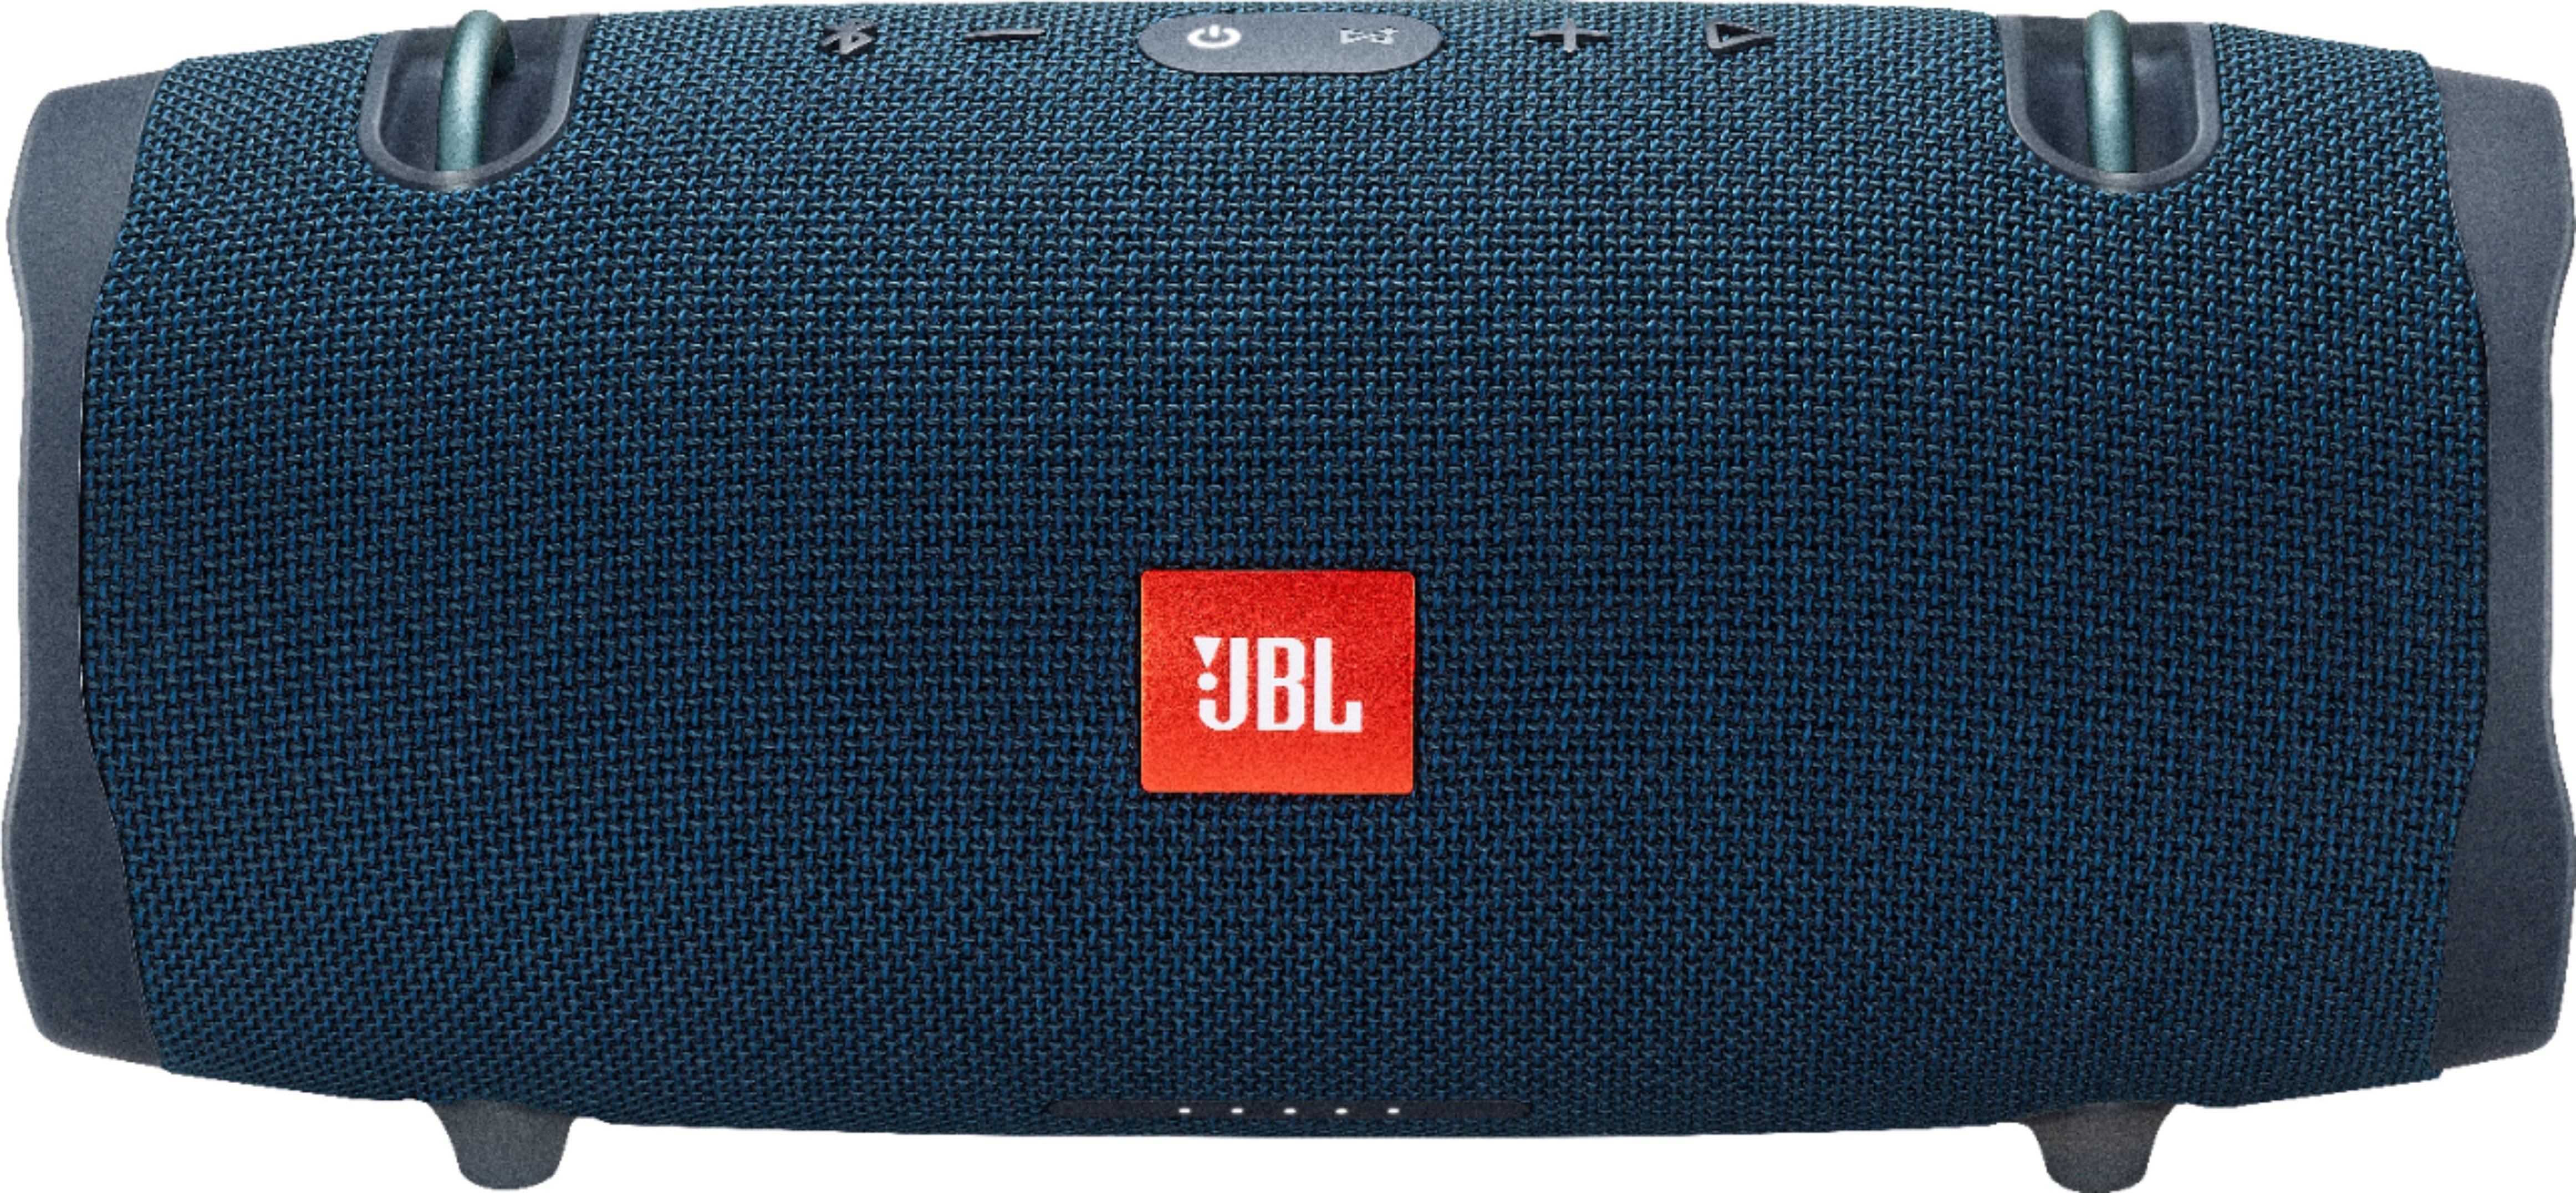 opladning Forudsætning Splendor Best Buy: JBL Xtreme 2 Portable Bluetooth Speaker Blue JBLXTREME2BLUAM